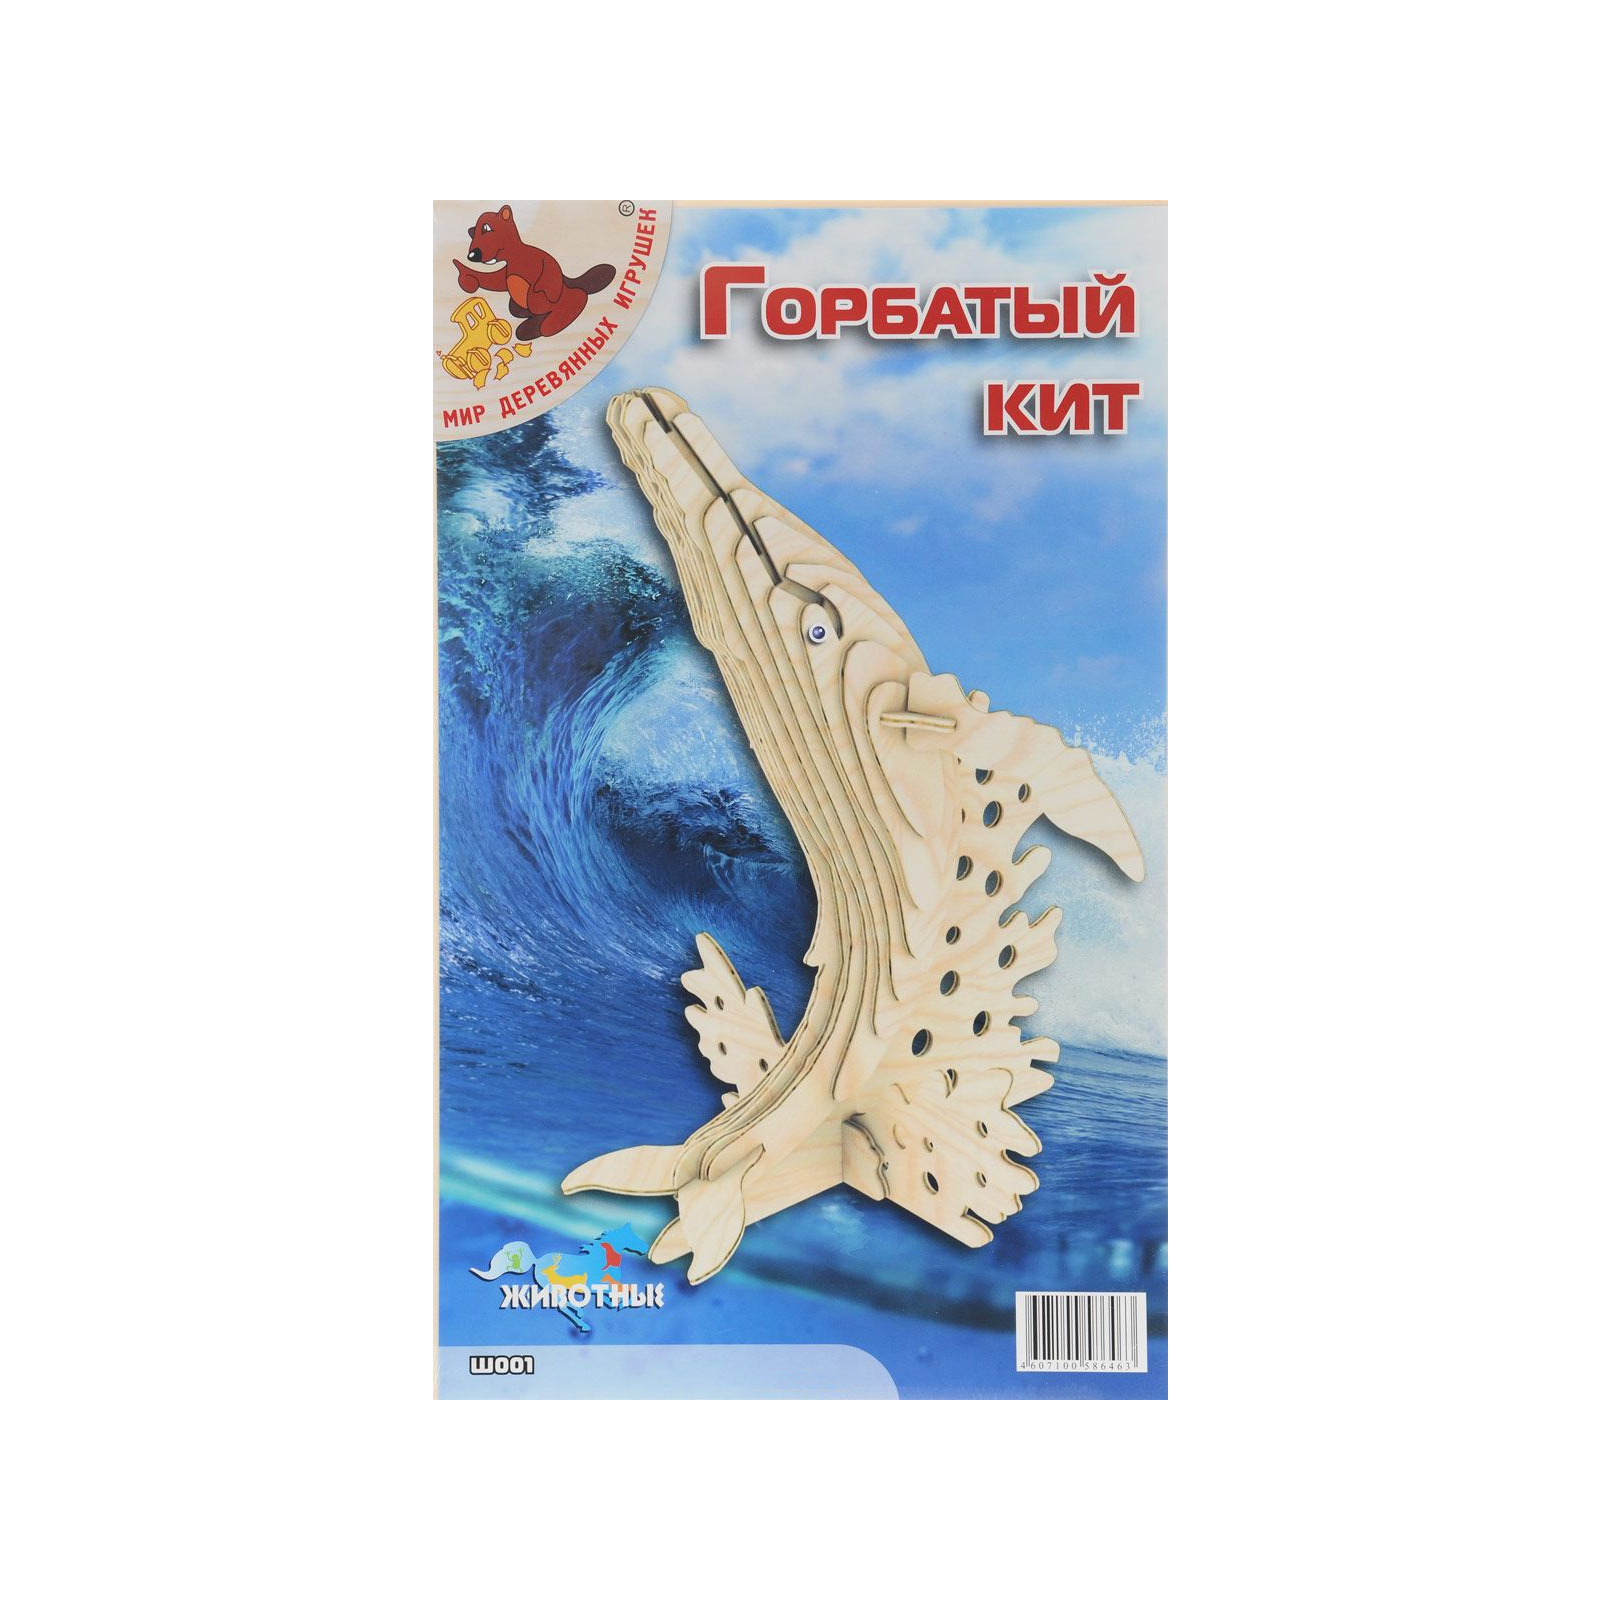 Збірна модель Мир деревянных игрушек Горбатый кит (Ш001)